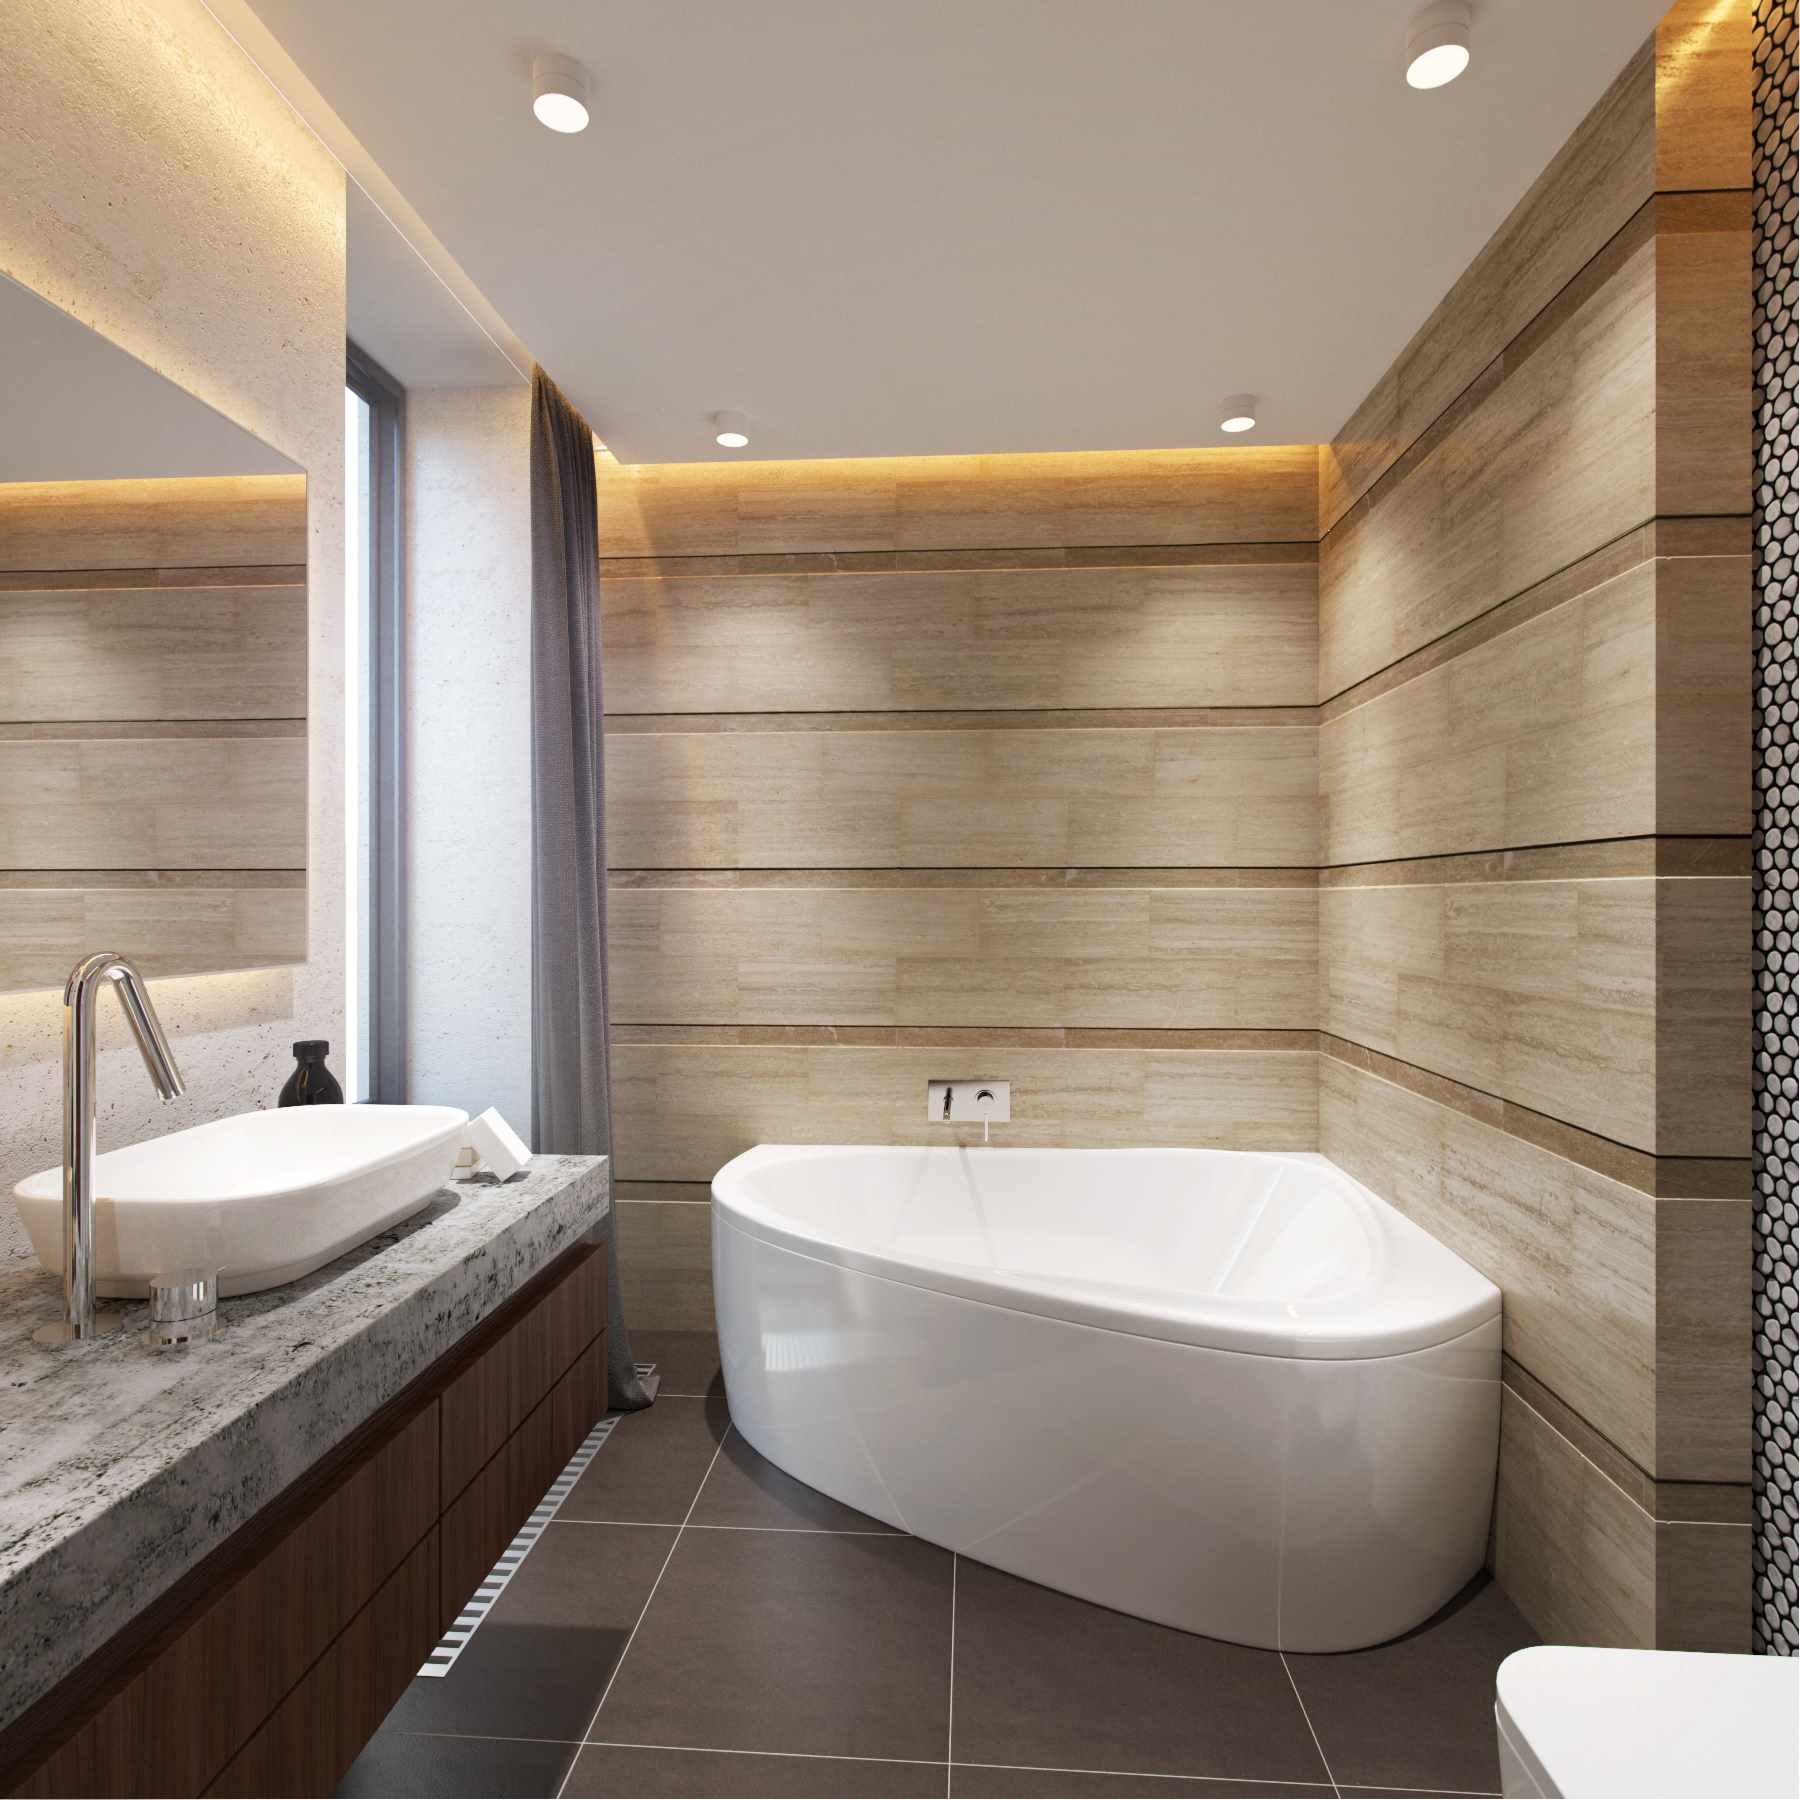 Un exemple d'un design de salle de bain léger avec une baignoire d'angle